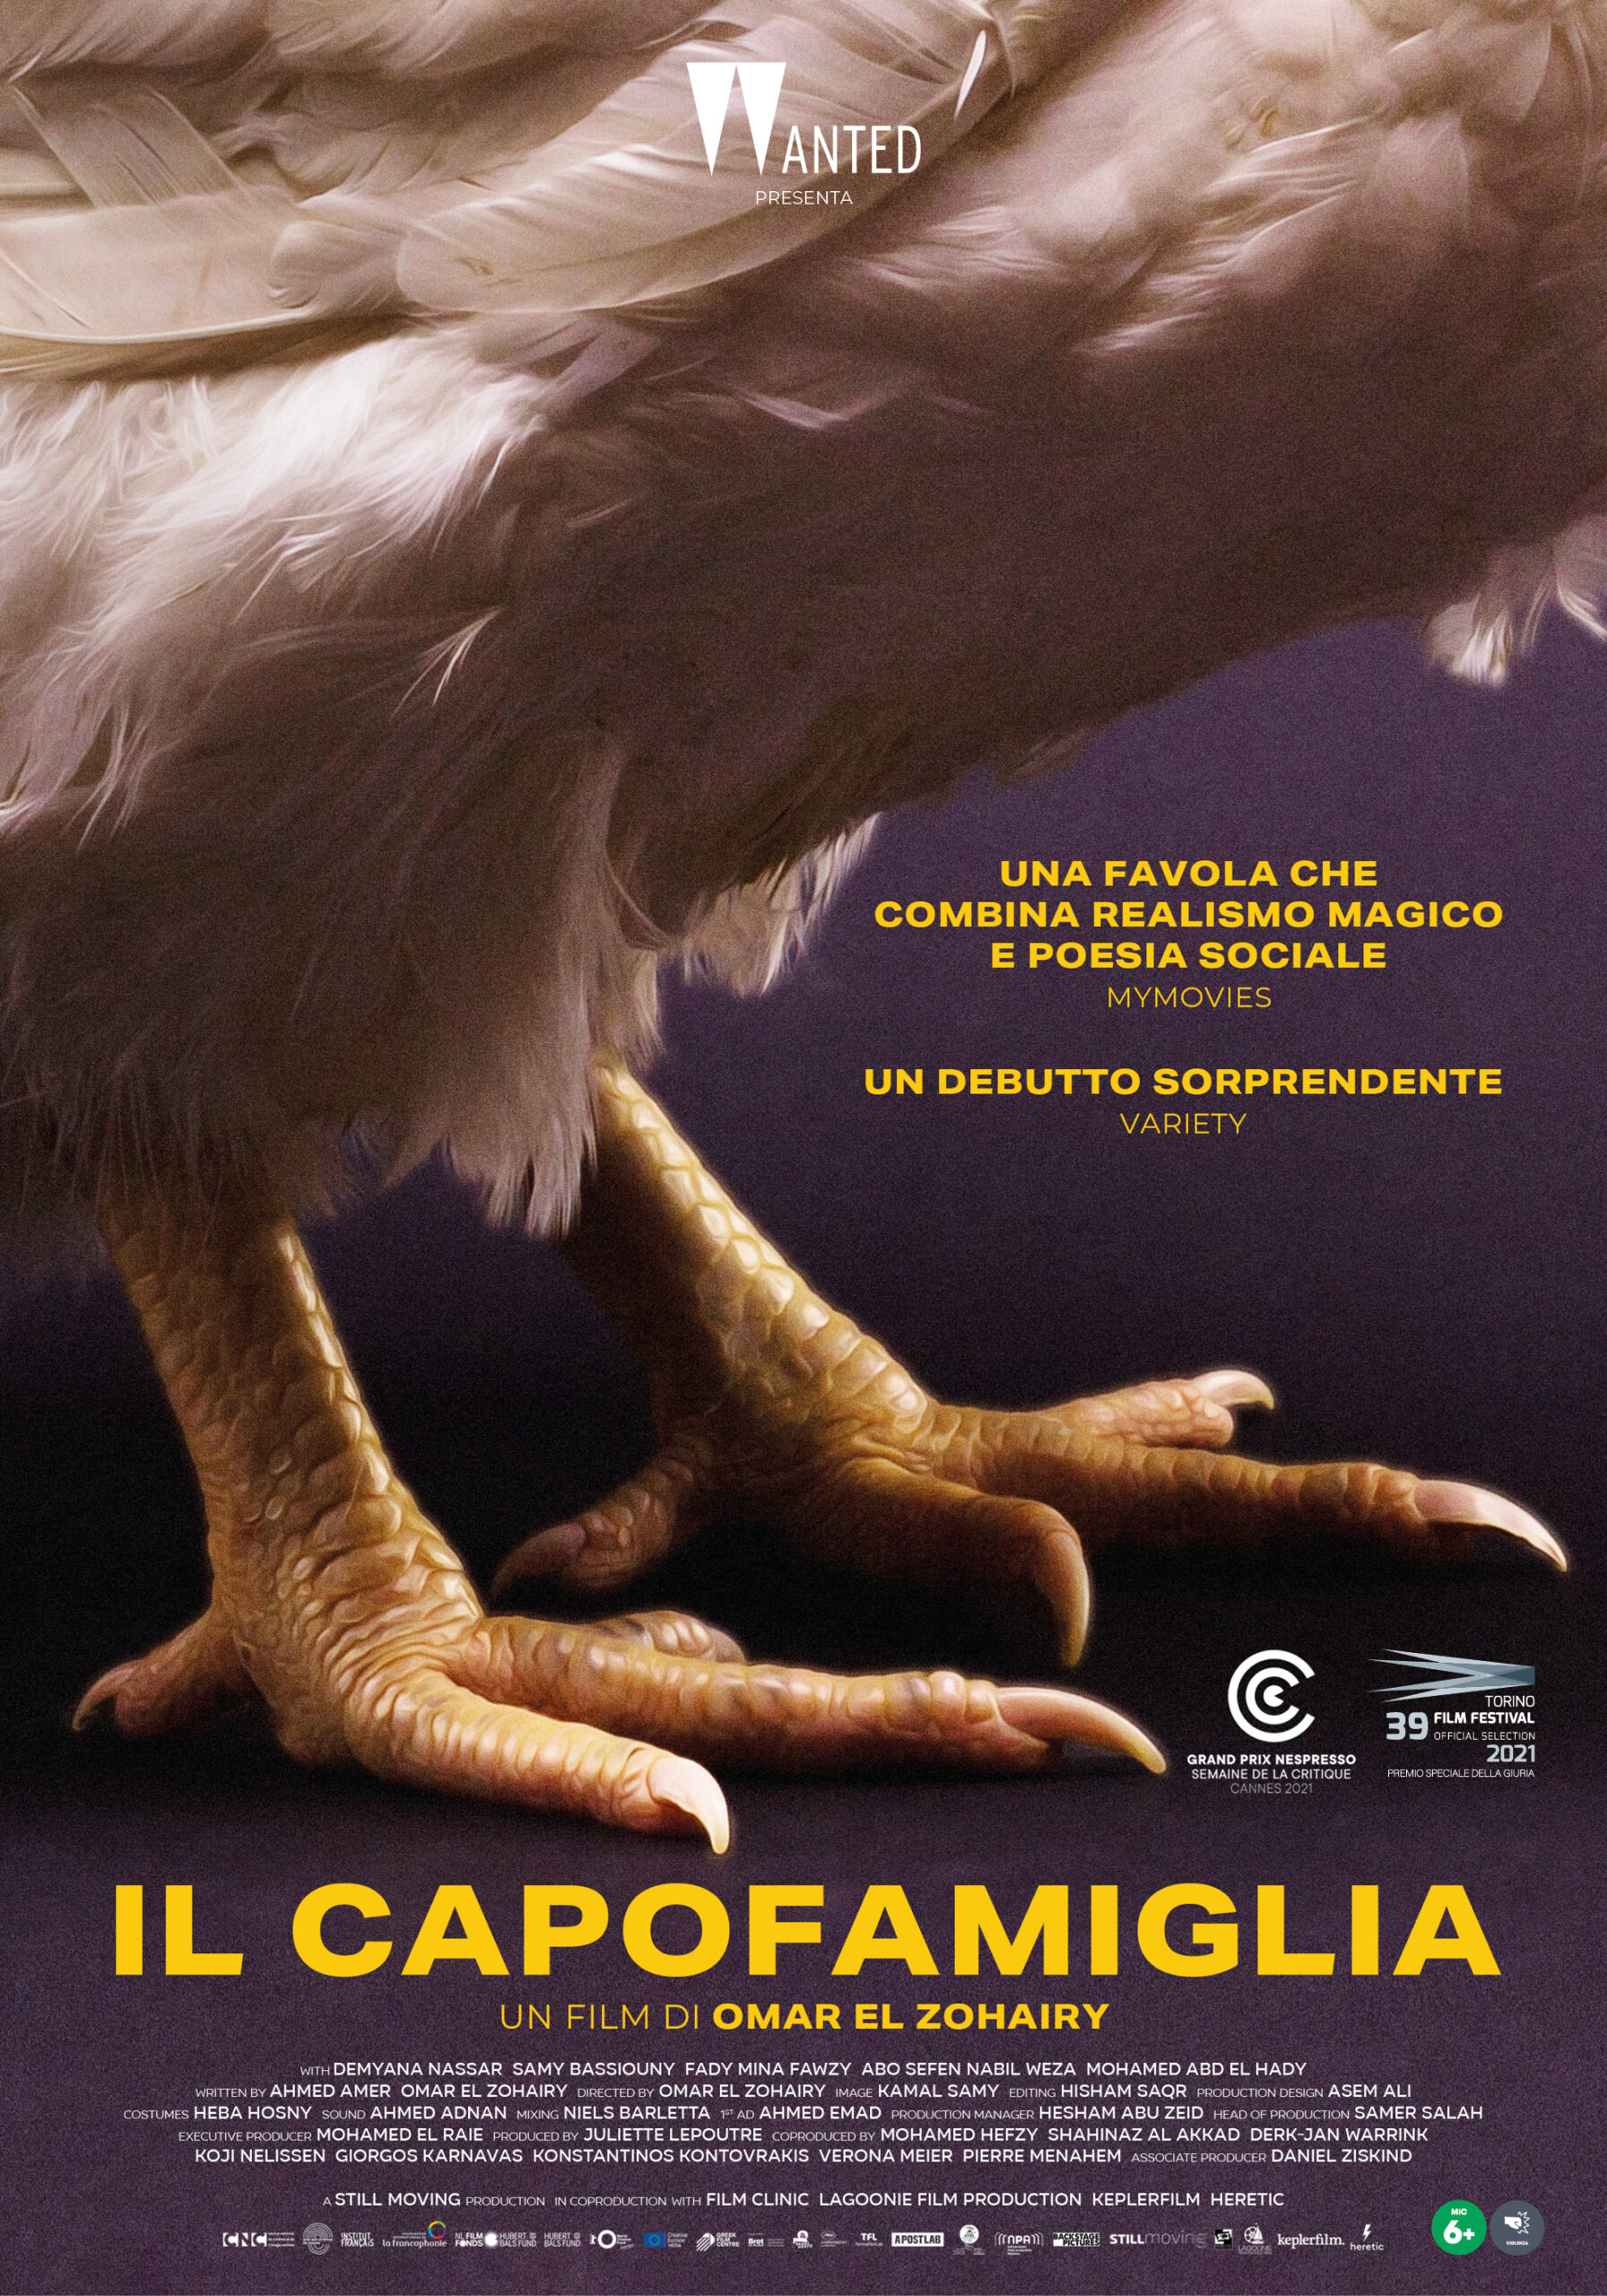 "Il Capofamiglia", al Cinema dal 16 Marzo con Wanted Cinema